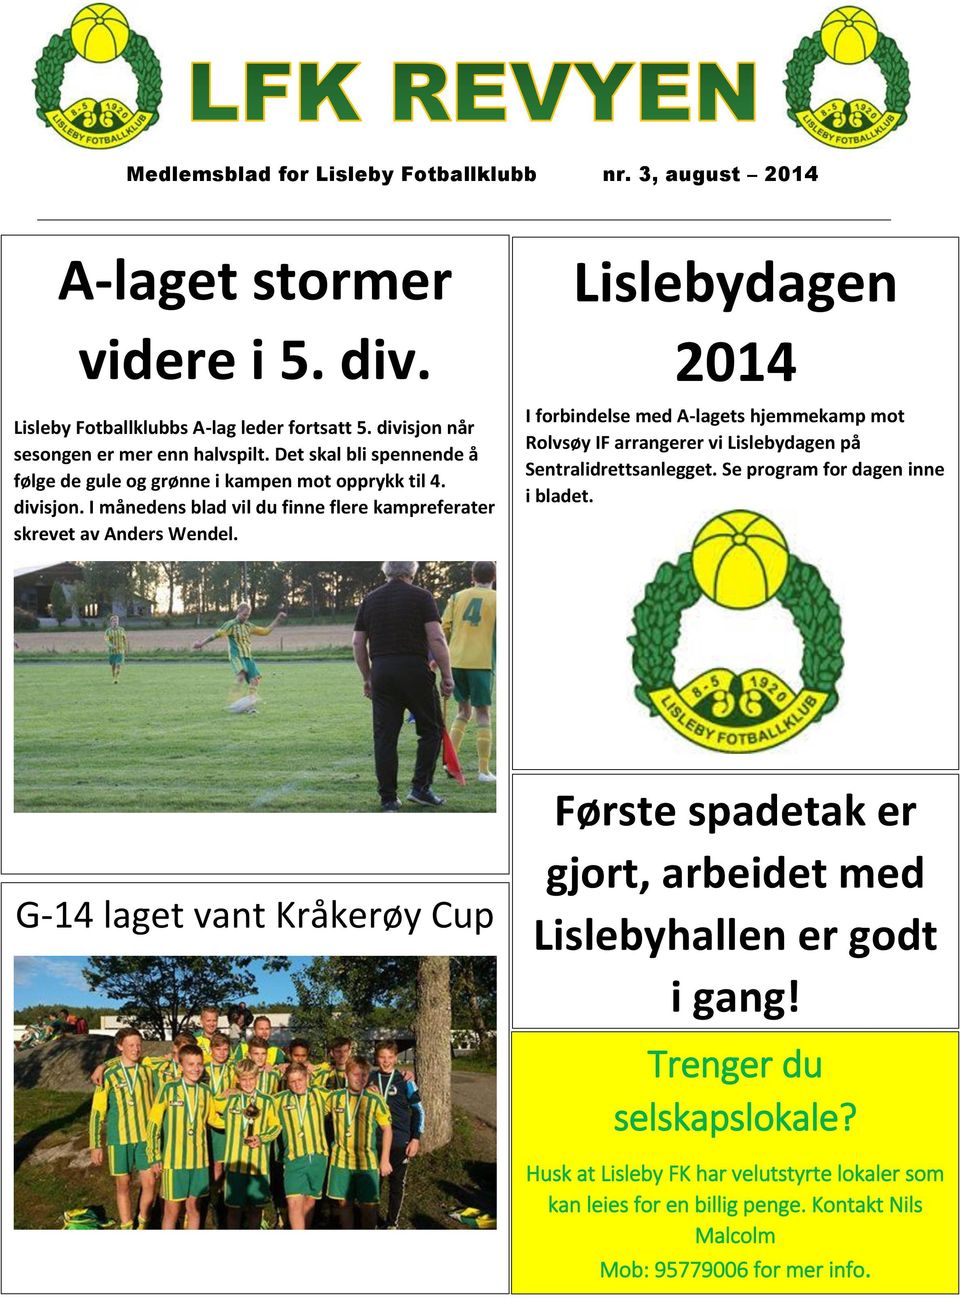 Lislebydagen 2014 I forbindelse med A-lagets hjemmekamp mot Rolvsøy IF arrangerer vi Lislebydagen på Sentralidrettsanlegget. Se program for dagen inne i bladet.